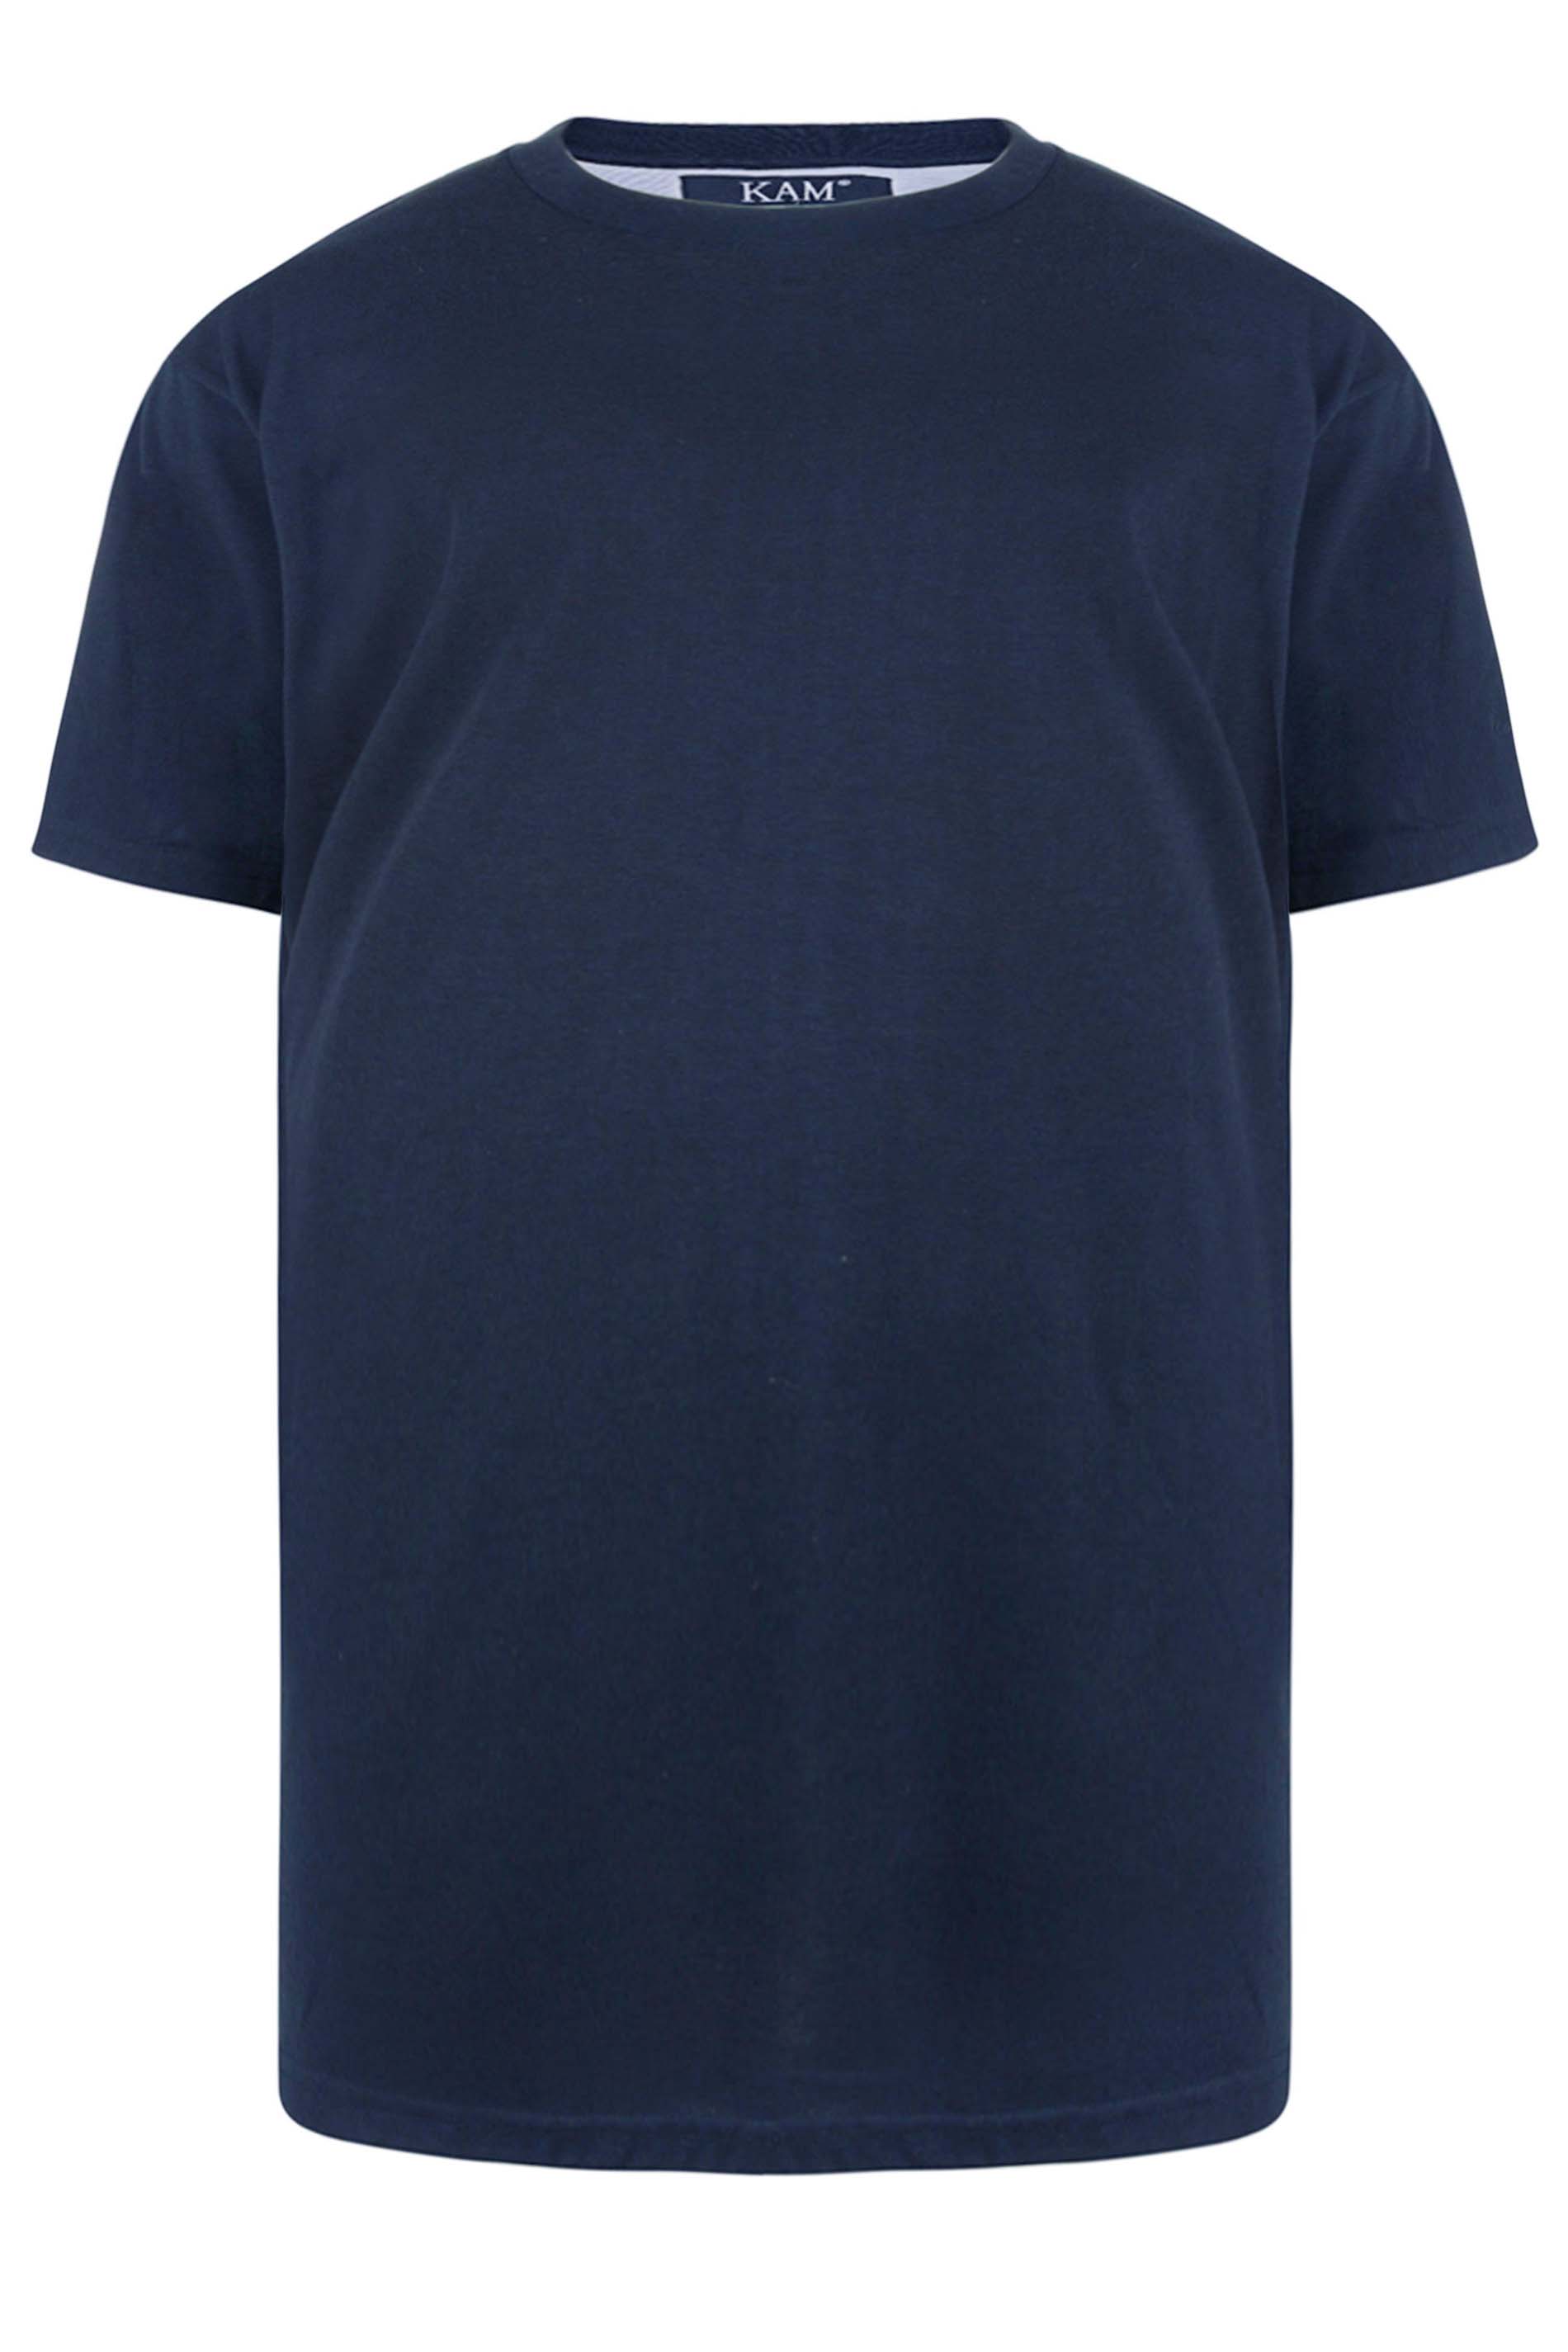 KAM Navy Blue Plain T-Shirt | BadRhino